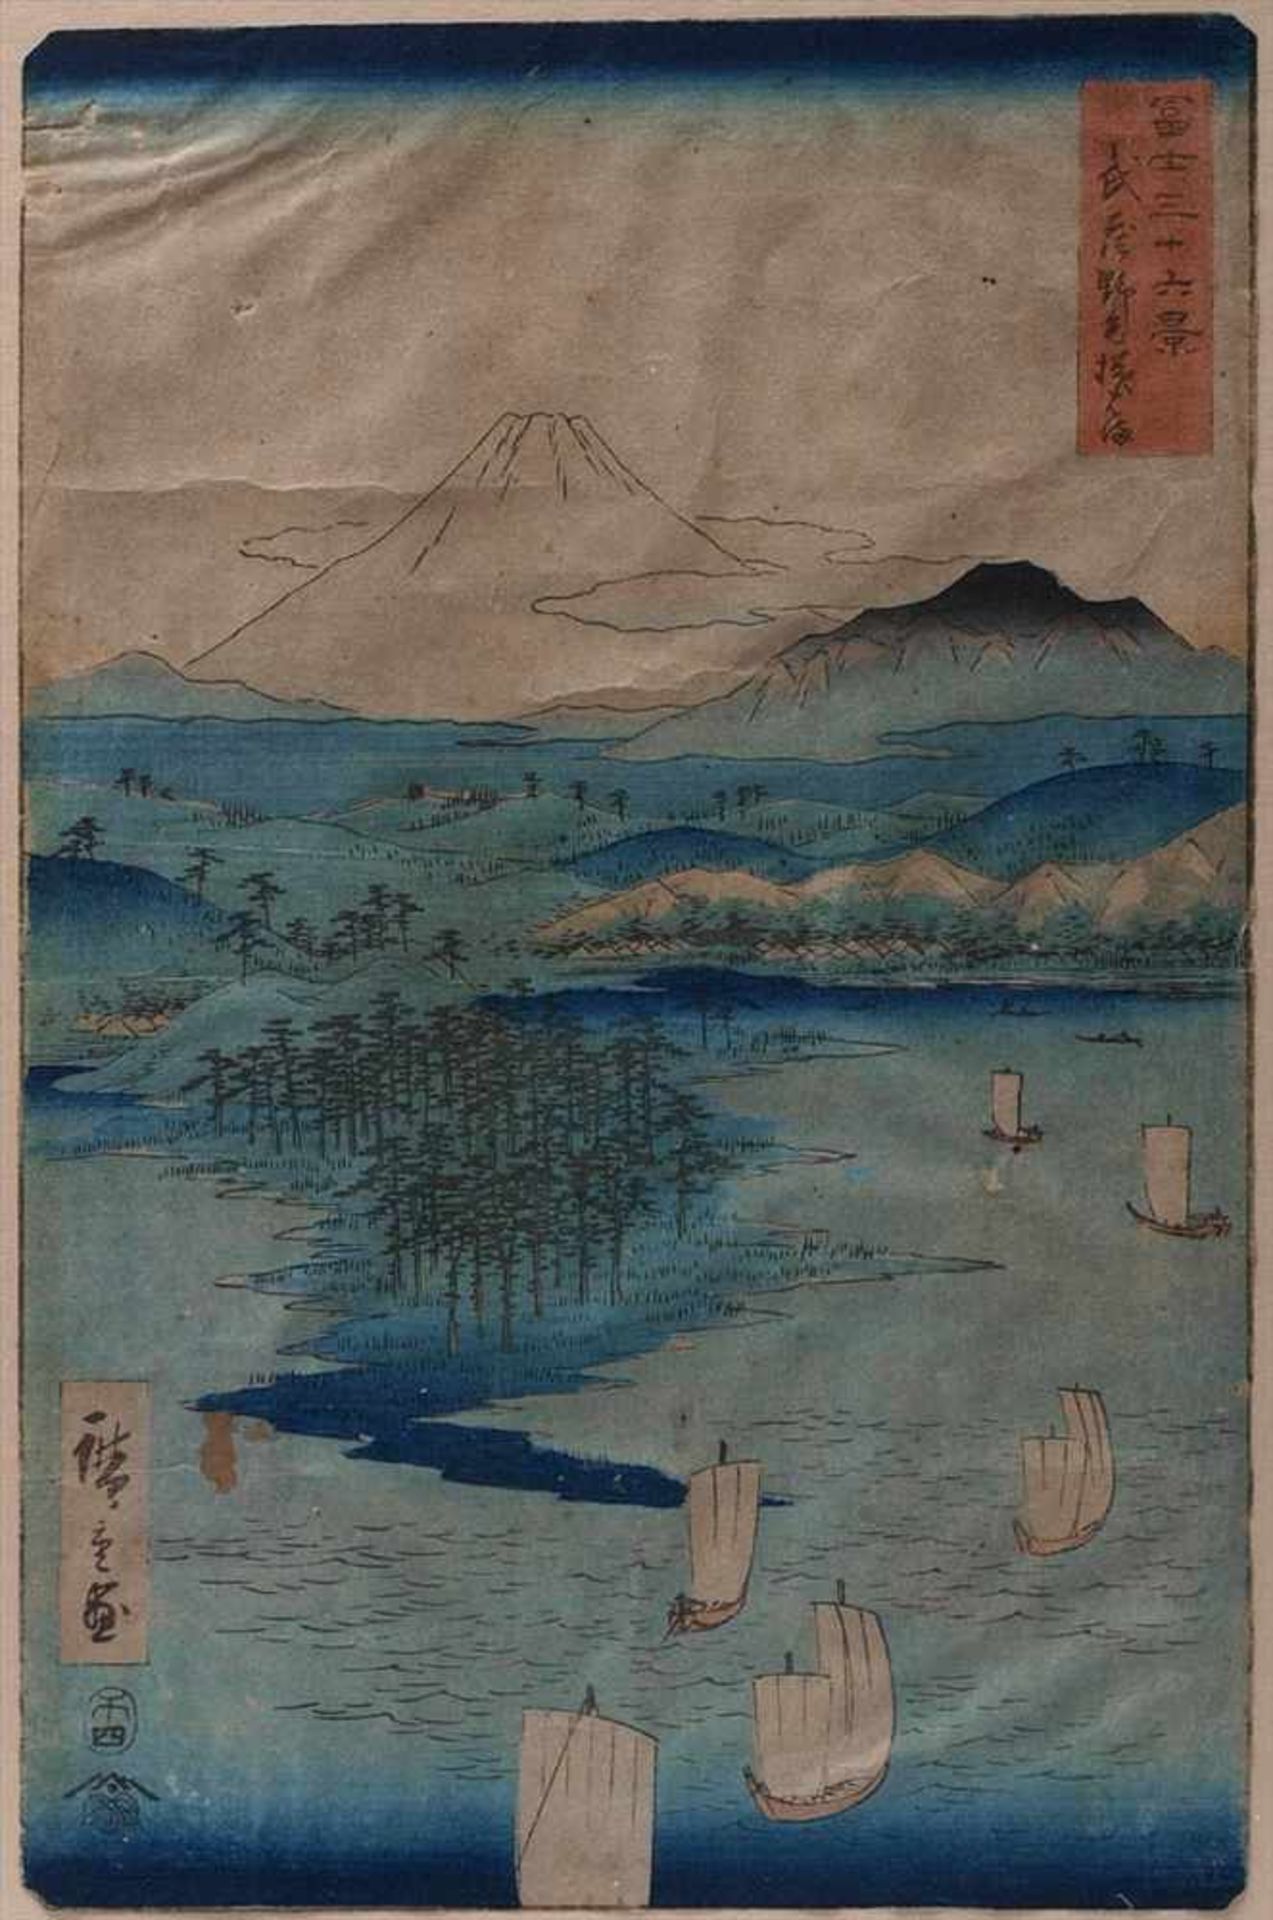 Farbholzschnitt, Japan, 19.Jhdt.Wohl Hiroshige I oder II. Weite Seenlandschaft mit Fischerbooten und - Image 2 of 4